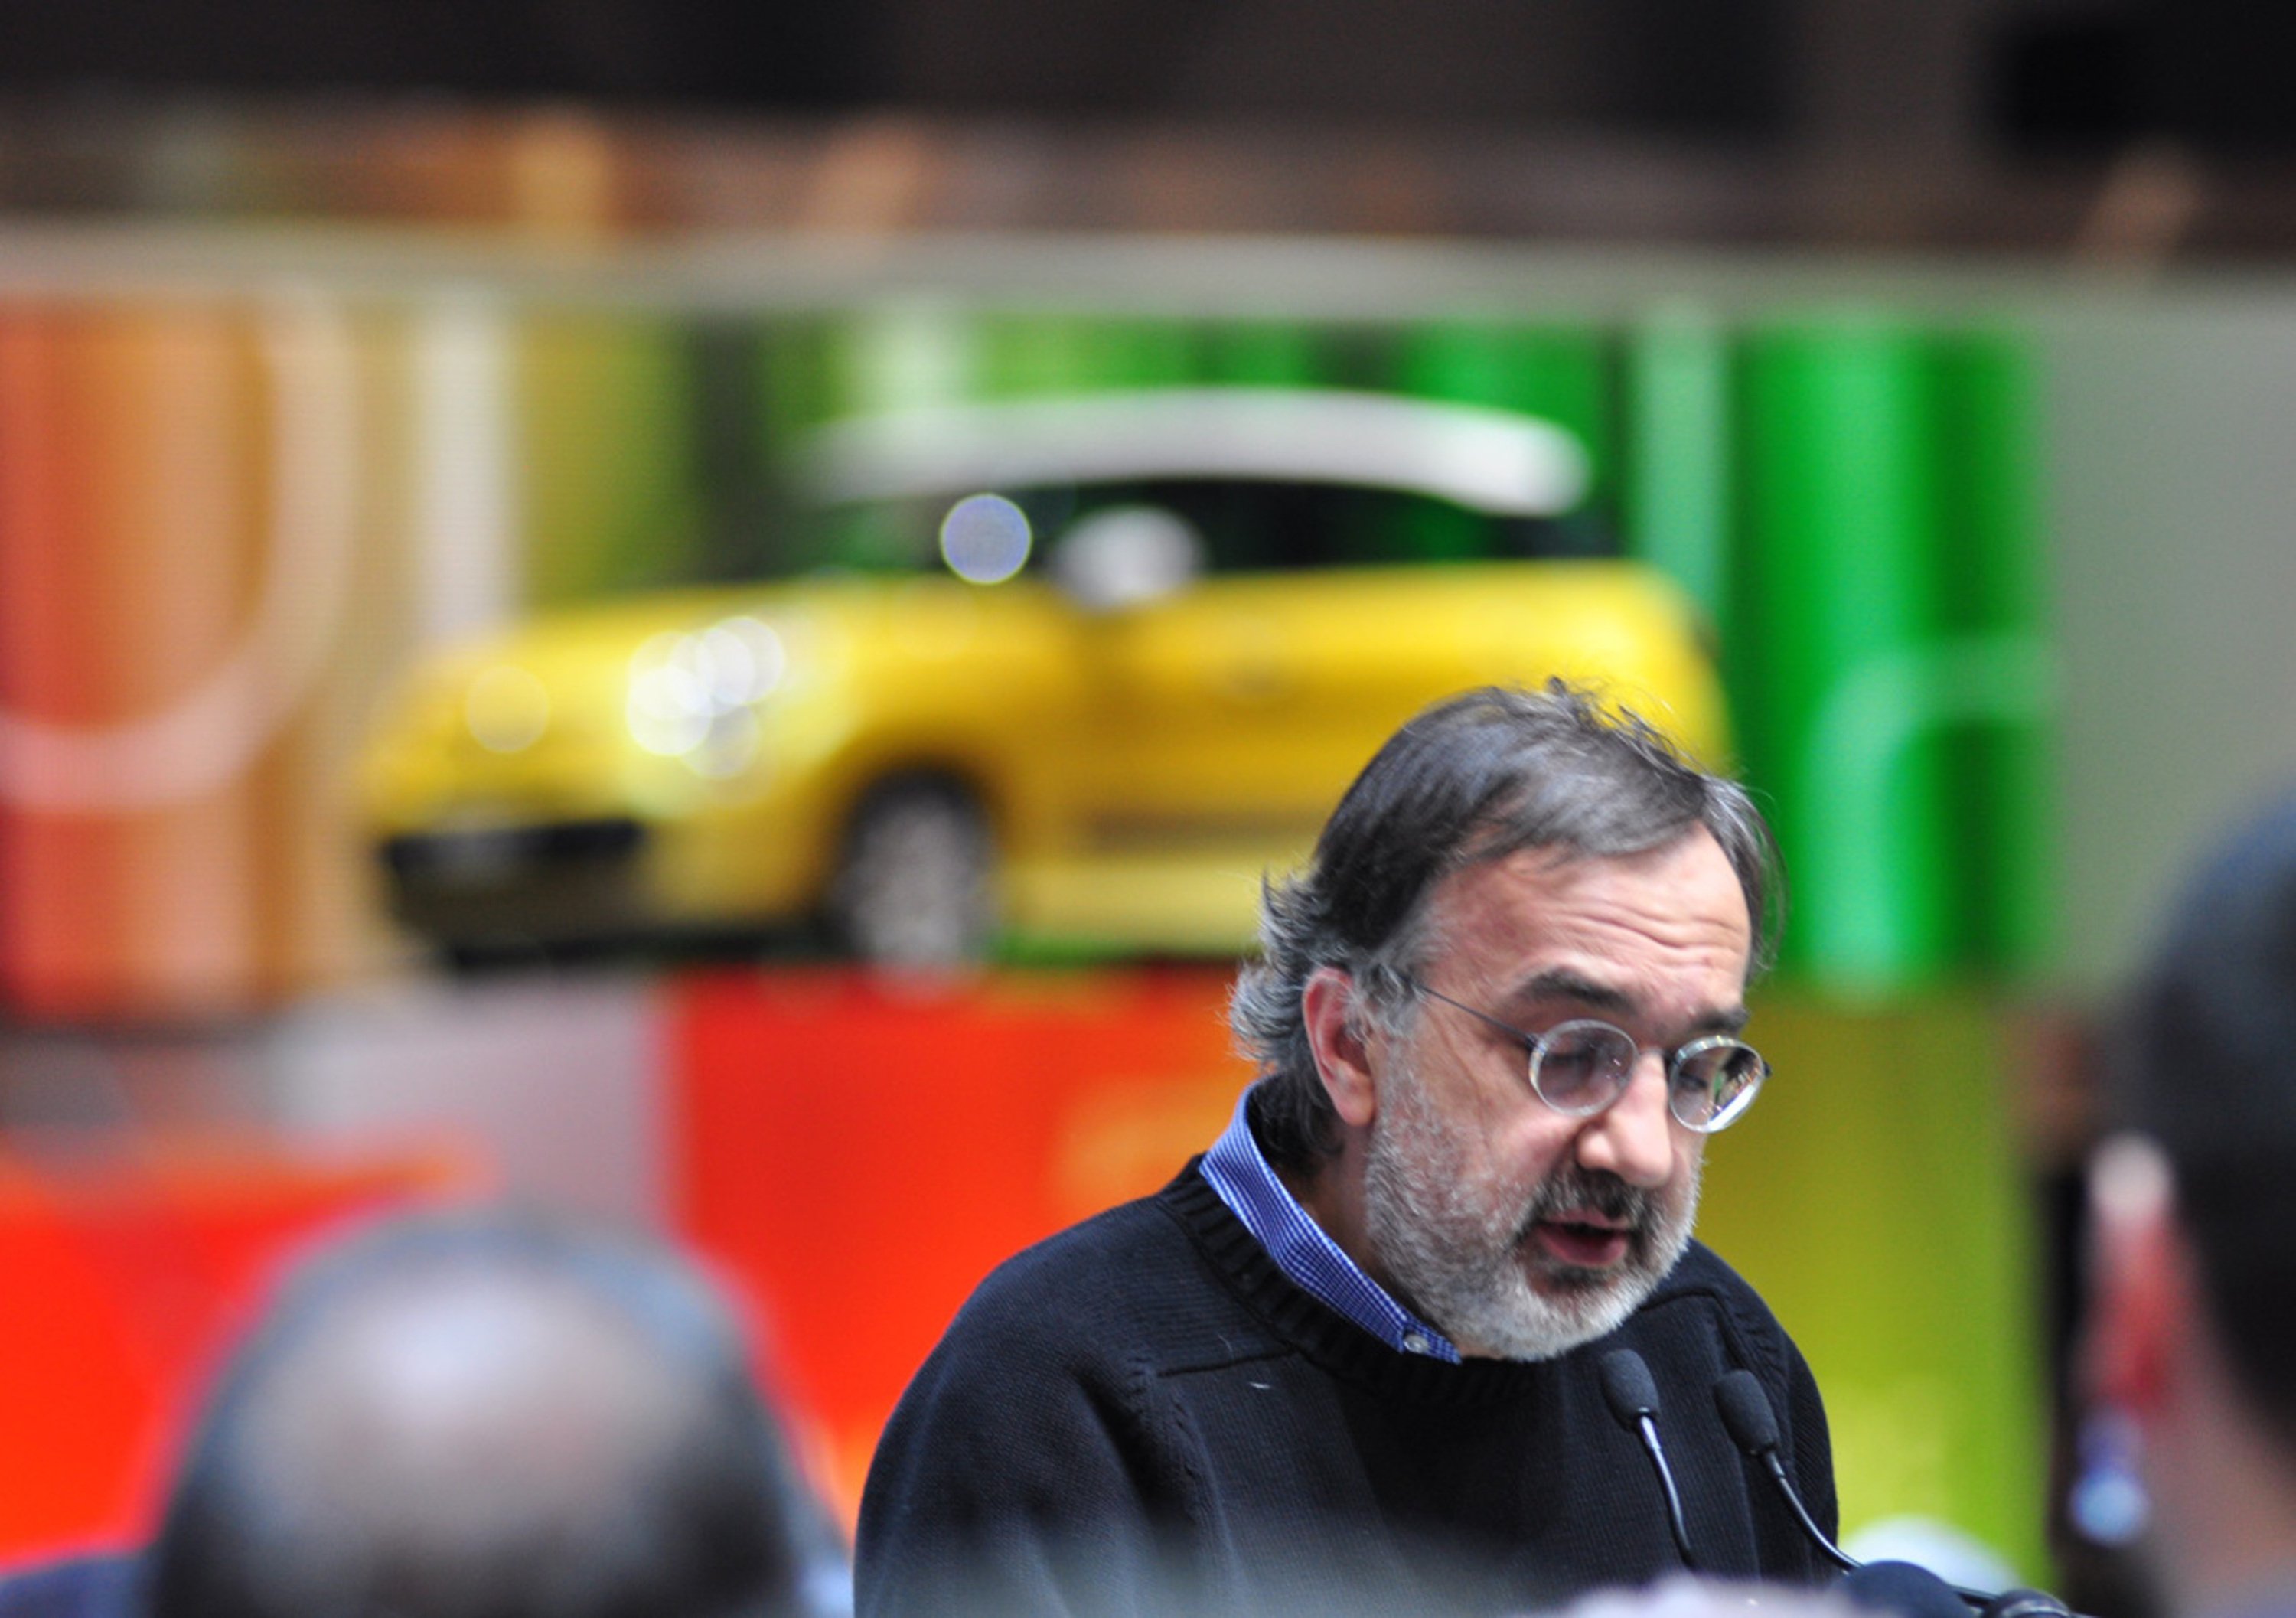 Salone di Ginevra 2014: un esame da superare per il Gruppo Fiat